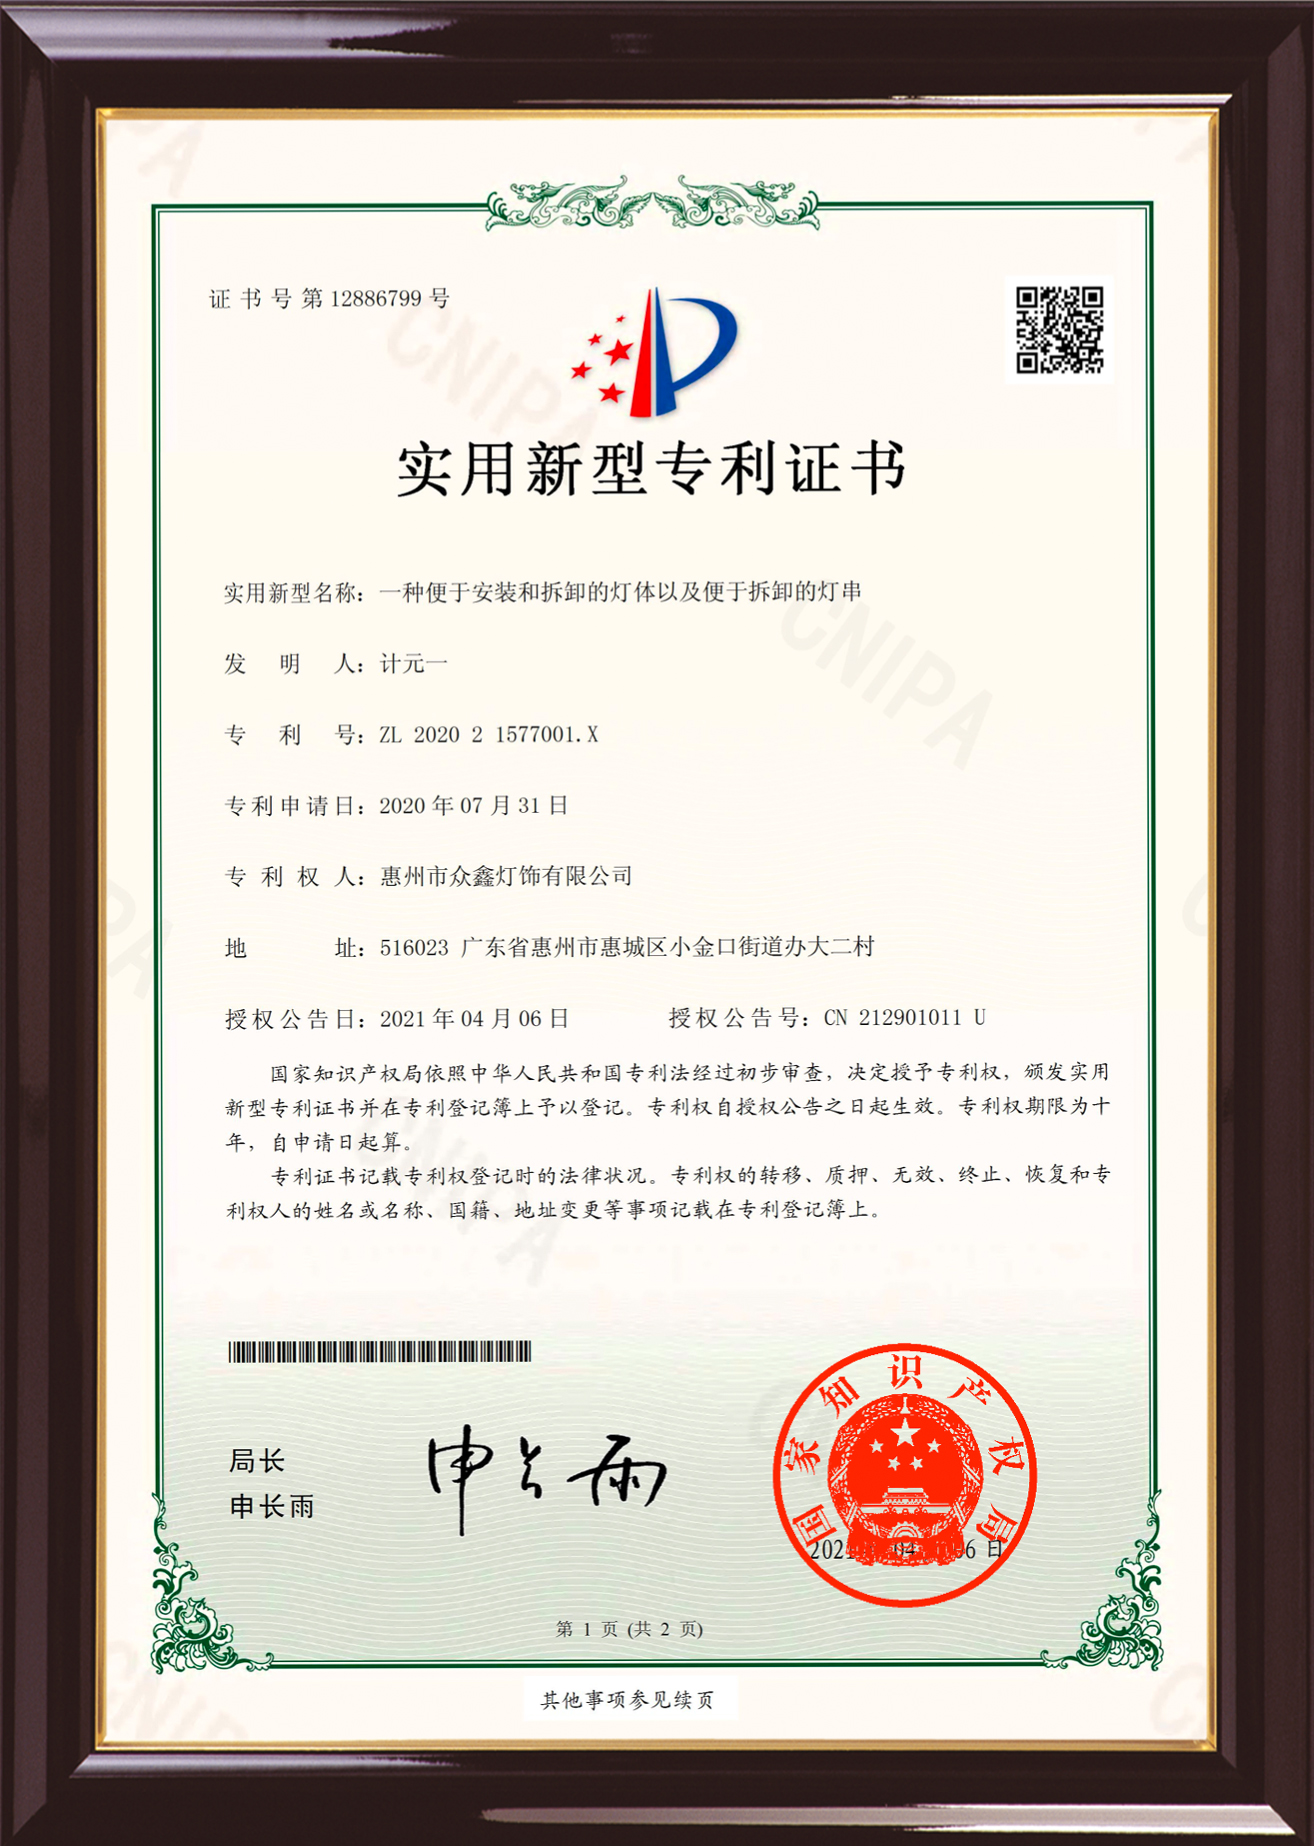 Lietderīgā modeļa patenta sertifikāts